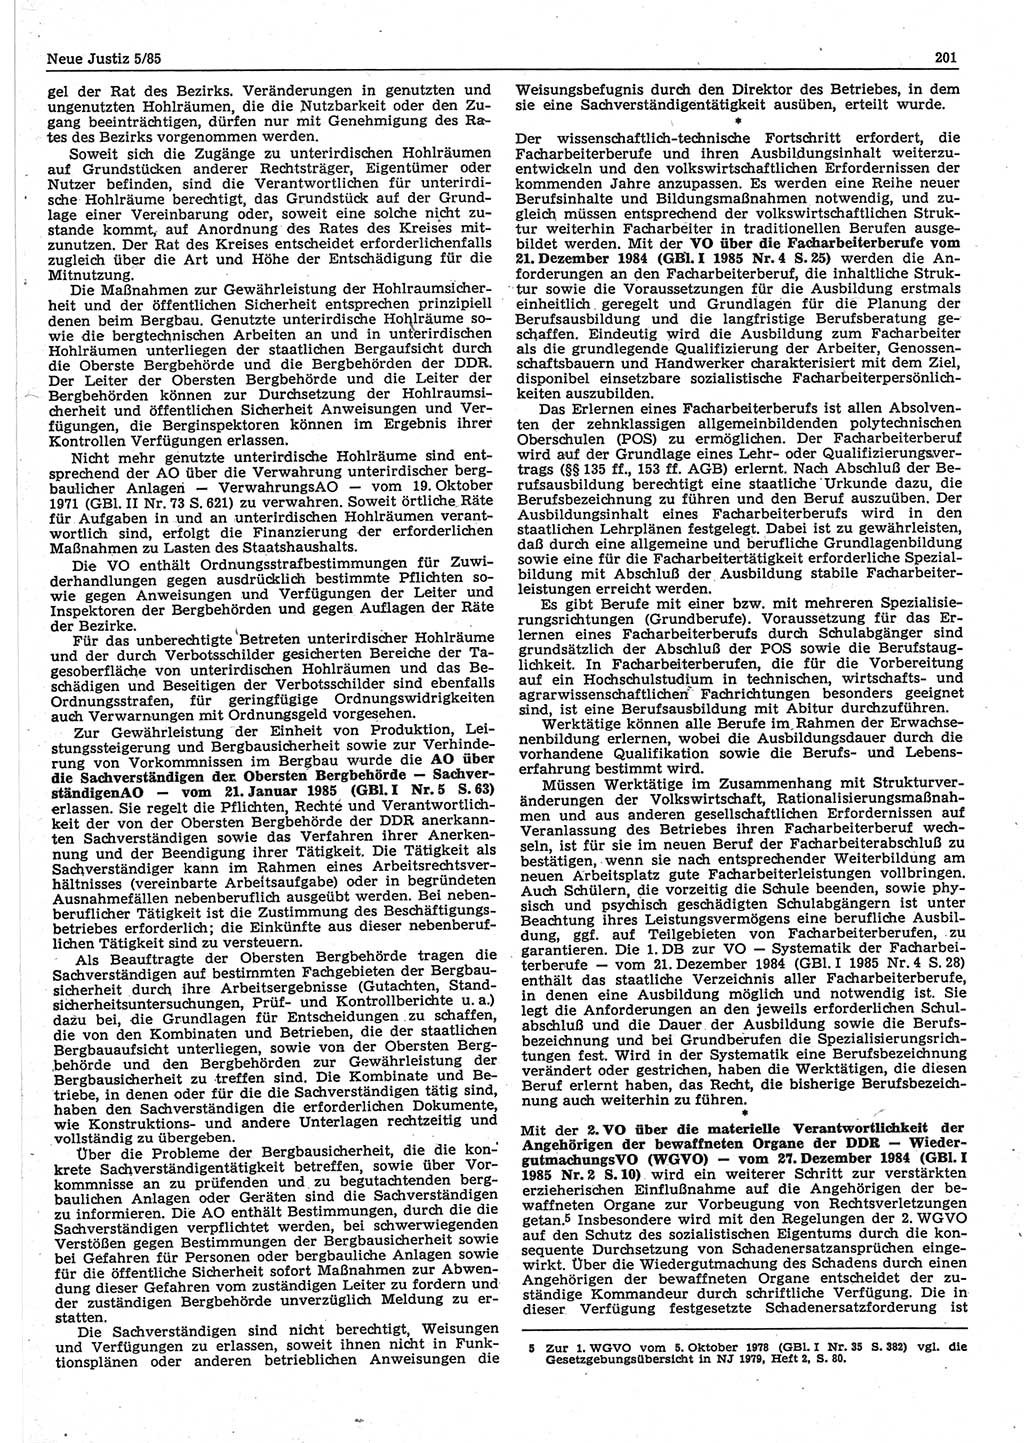 Neue Justiz (NJ), Zeitschrift für sozialistisches Recht und Gesetzlichkeit [Deutsche Demokratische Republik (DDR)], 39. Jahrgang 1985, Seite 201 (NJ DDR 1985, S. 201)